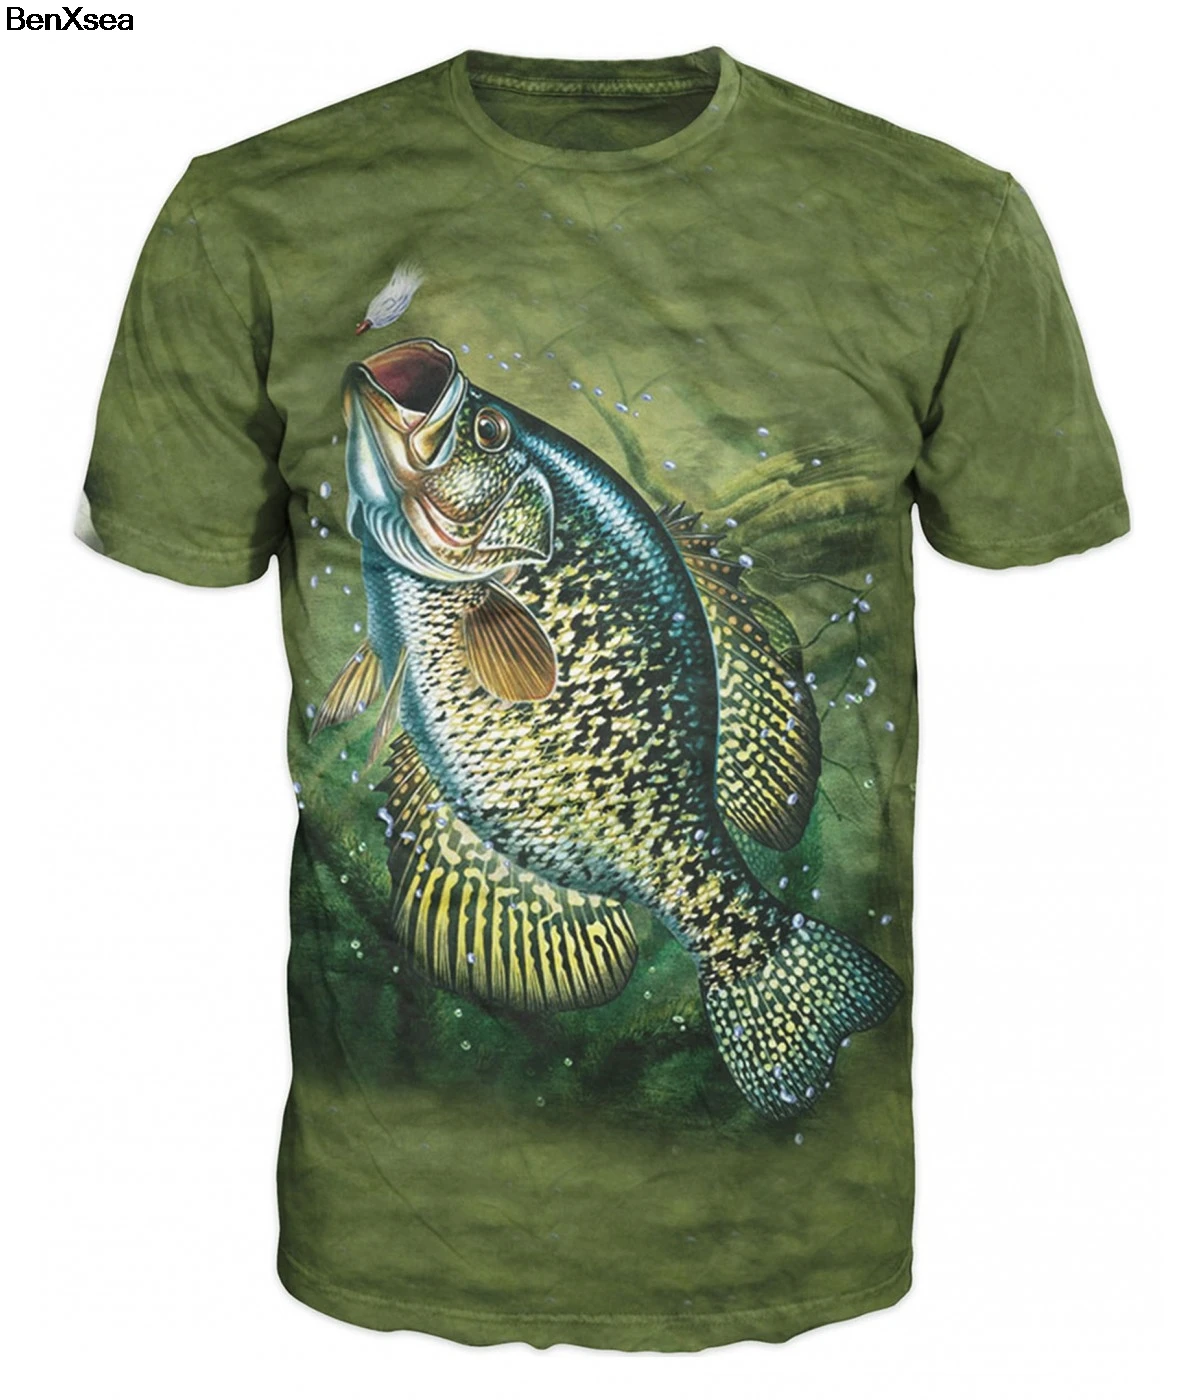 Модная стильная футболка с 3D принтом, крутая Мужская и женская футболка с 3D рыбкой, хобби, футболка с карпом, большие размеры, хип-хоп - Цвет: Мятный